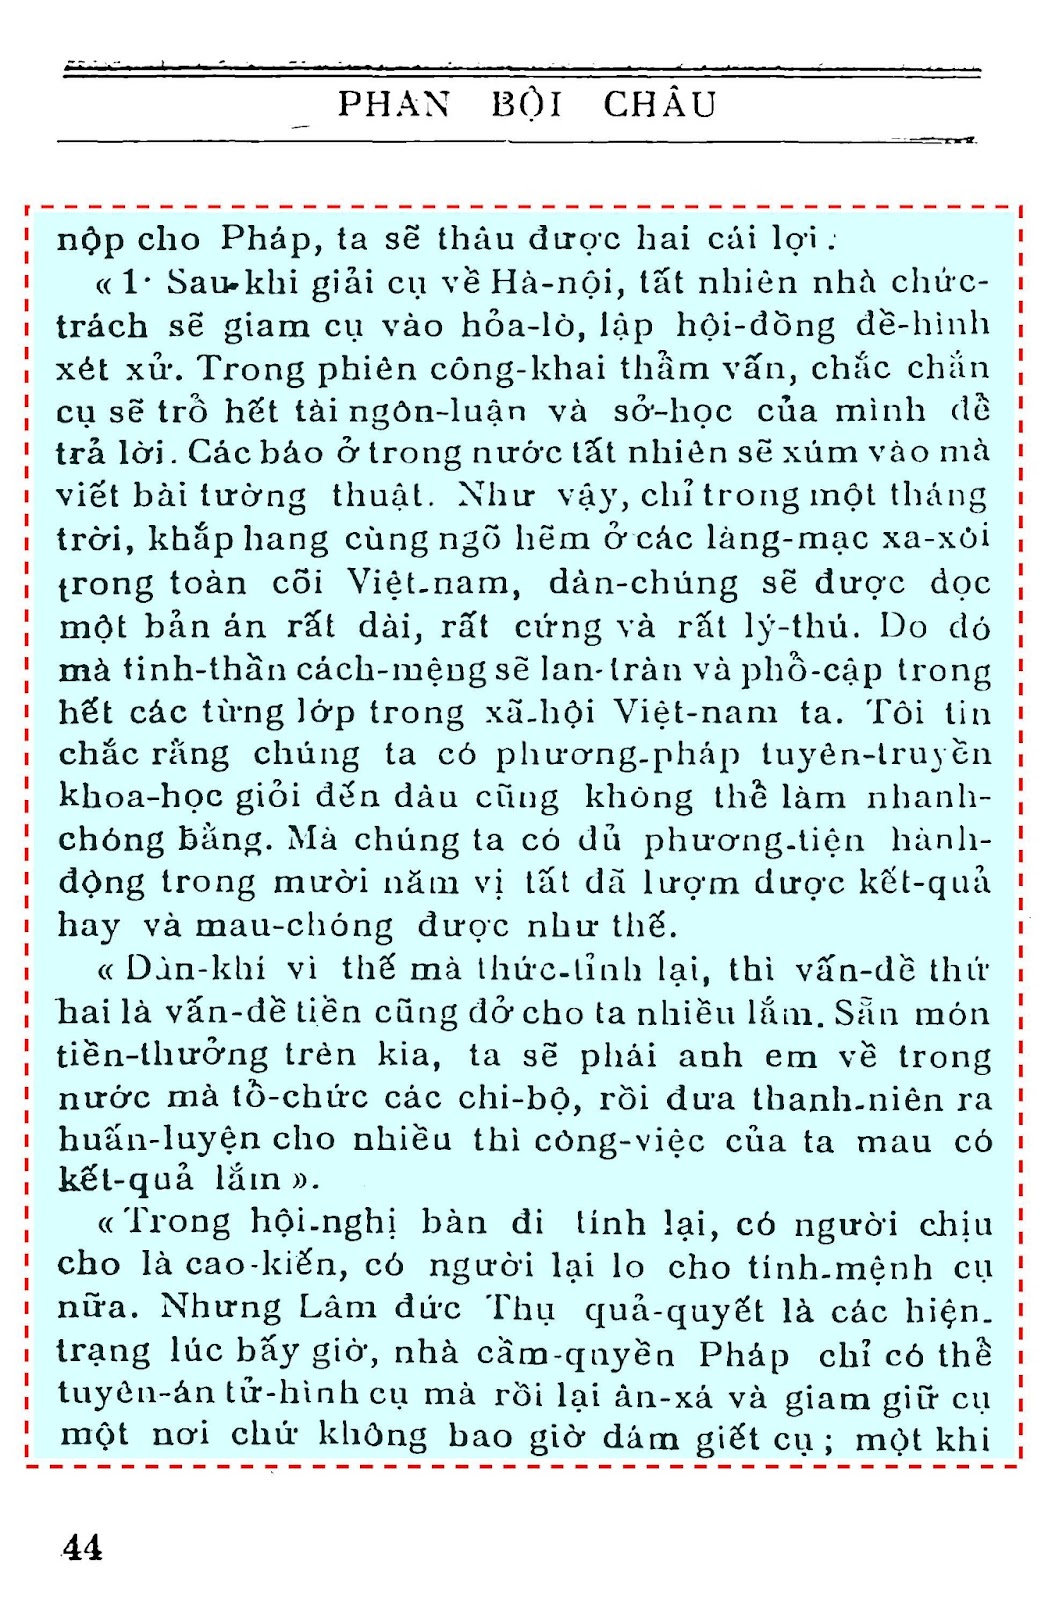 Trang 44 Phan Bội Chau - Thế Nguyên.jpg